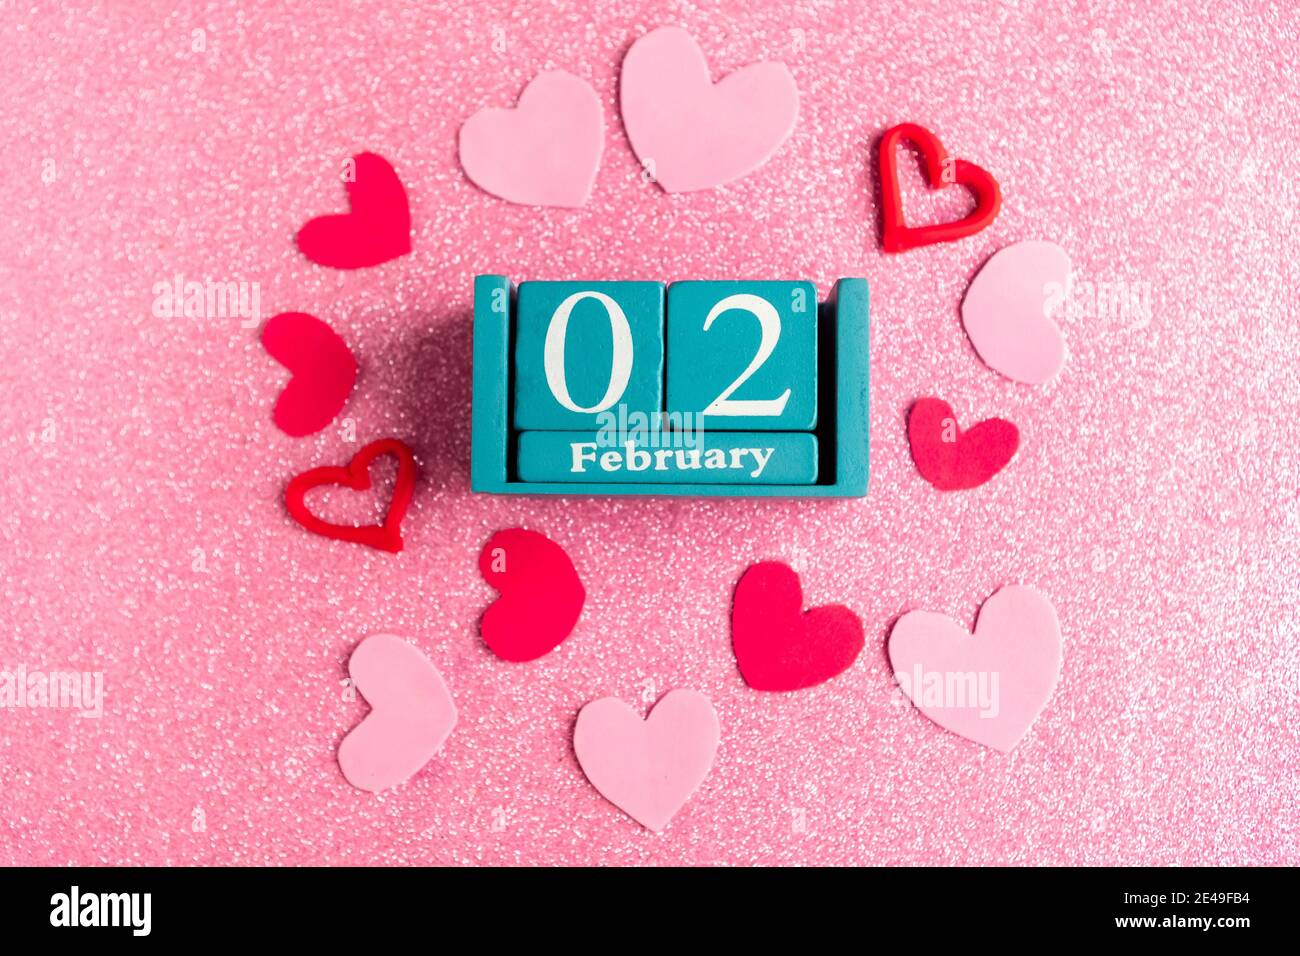 Février 2. Calendrier cube bleu avec mois et date et décorations sur fond rose scintillant. Banque D'Images